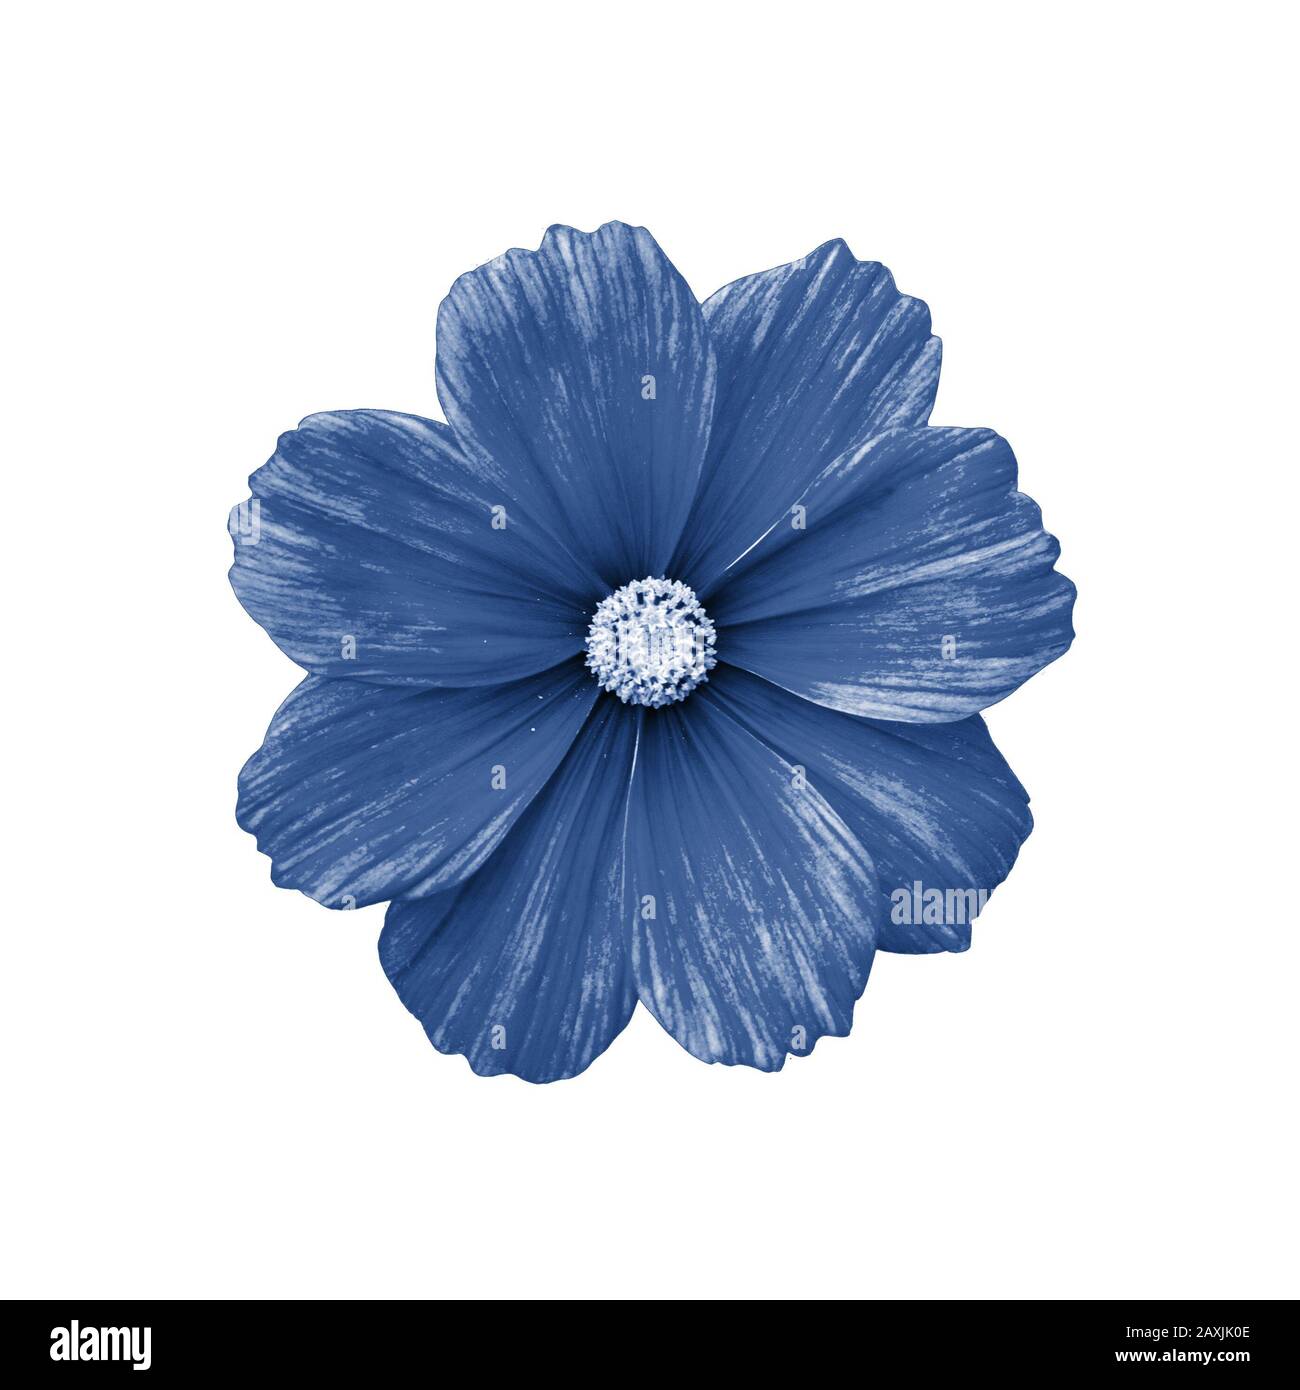 La fleur COSMOS est isolée sur la vue de dessus blanche. Isolat d'une seule  fleur de cosmos teintée en bleu classique. Belle fleur naturelle fraîche  Photo Stock - Alamy